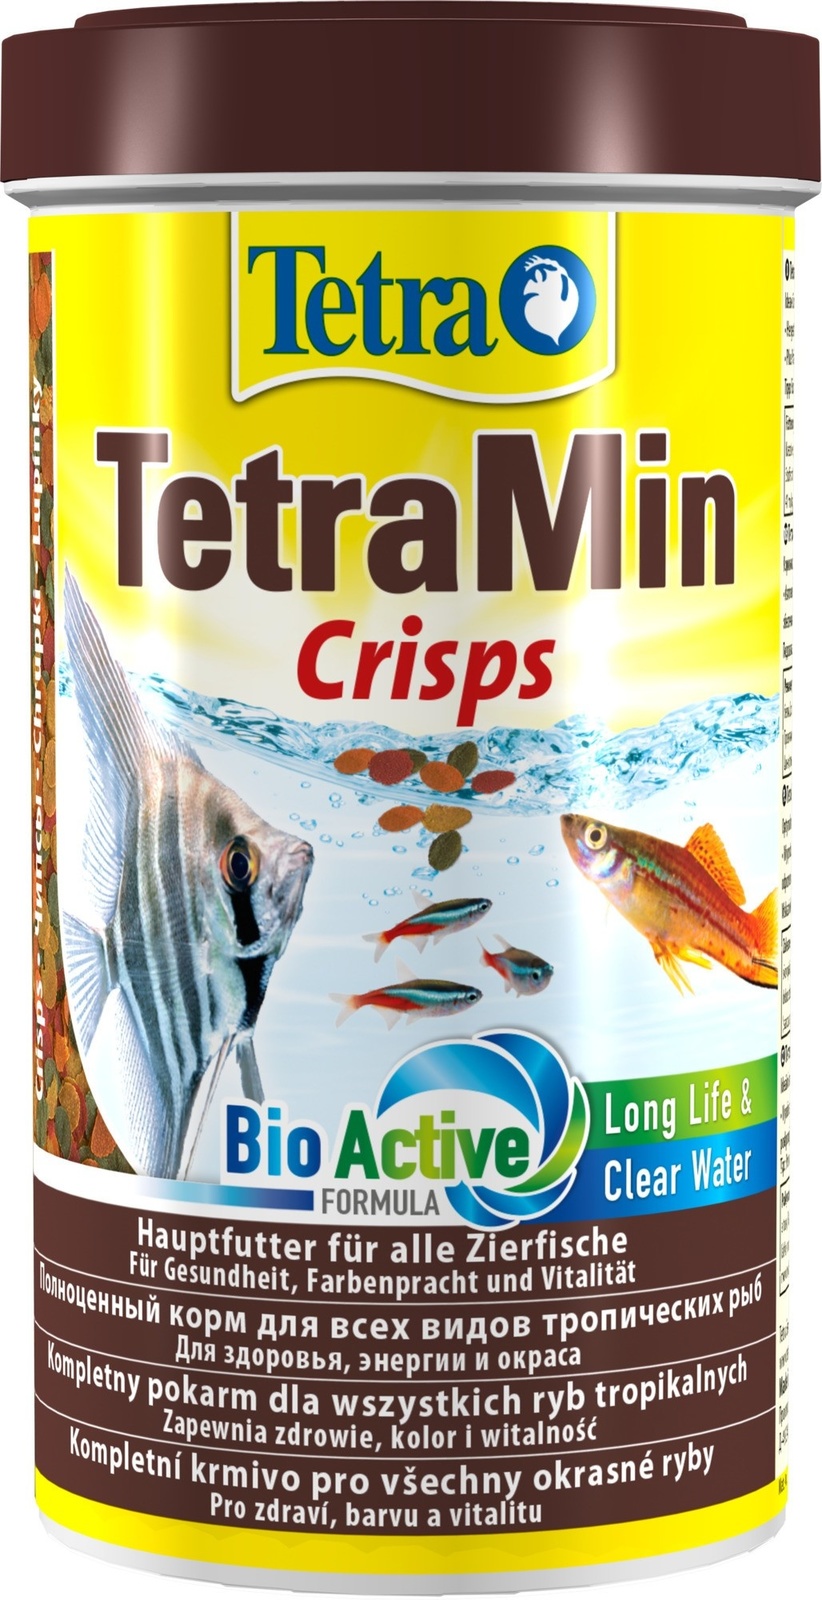 Tetra (корма) Tetra (корма) корм для всех видов тропических рыб, чипсы (110 г) tetra корма tetra корма растительный корм для декоративных рыб чипсы 18 г